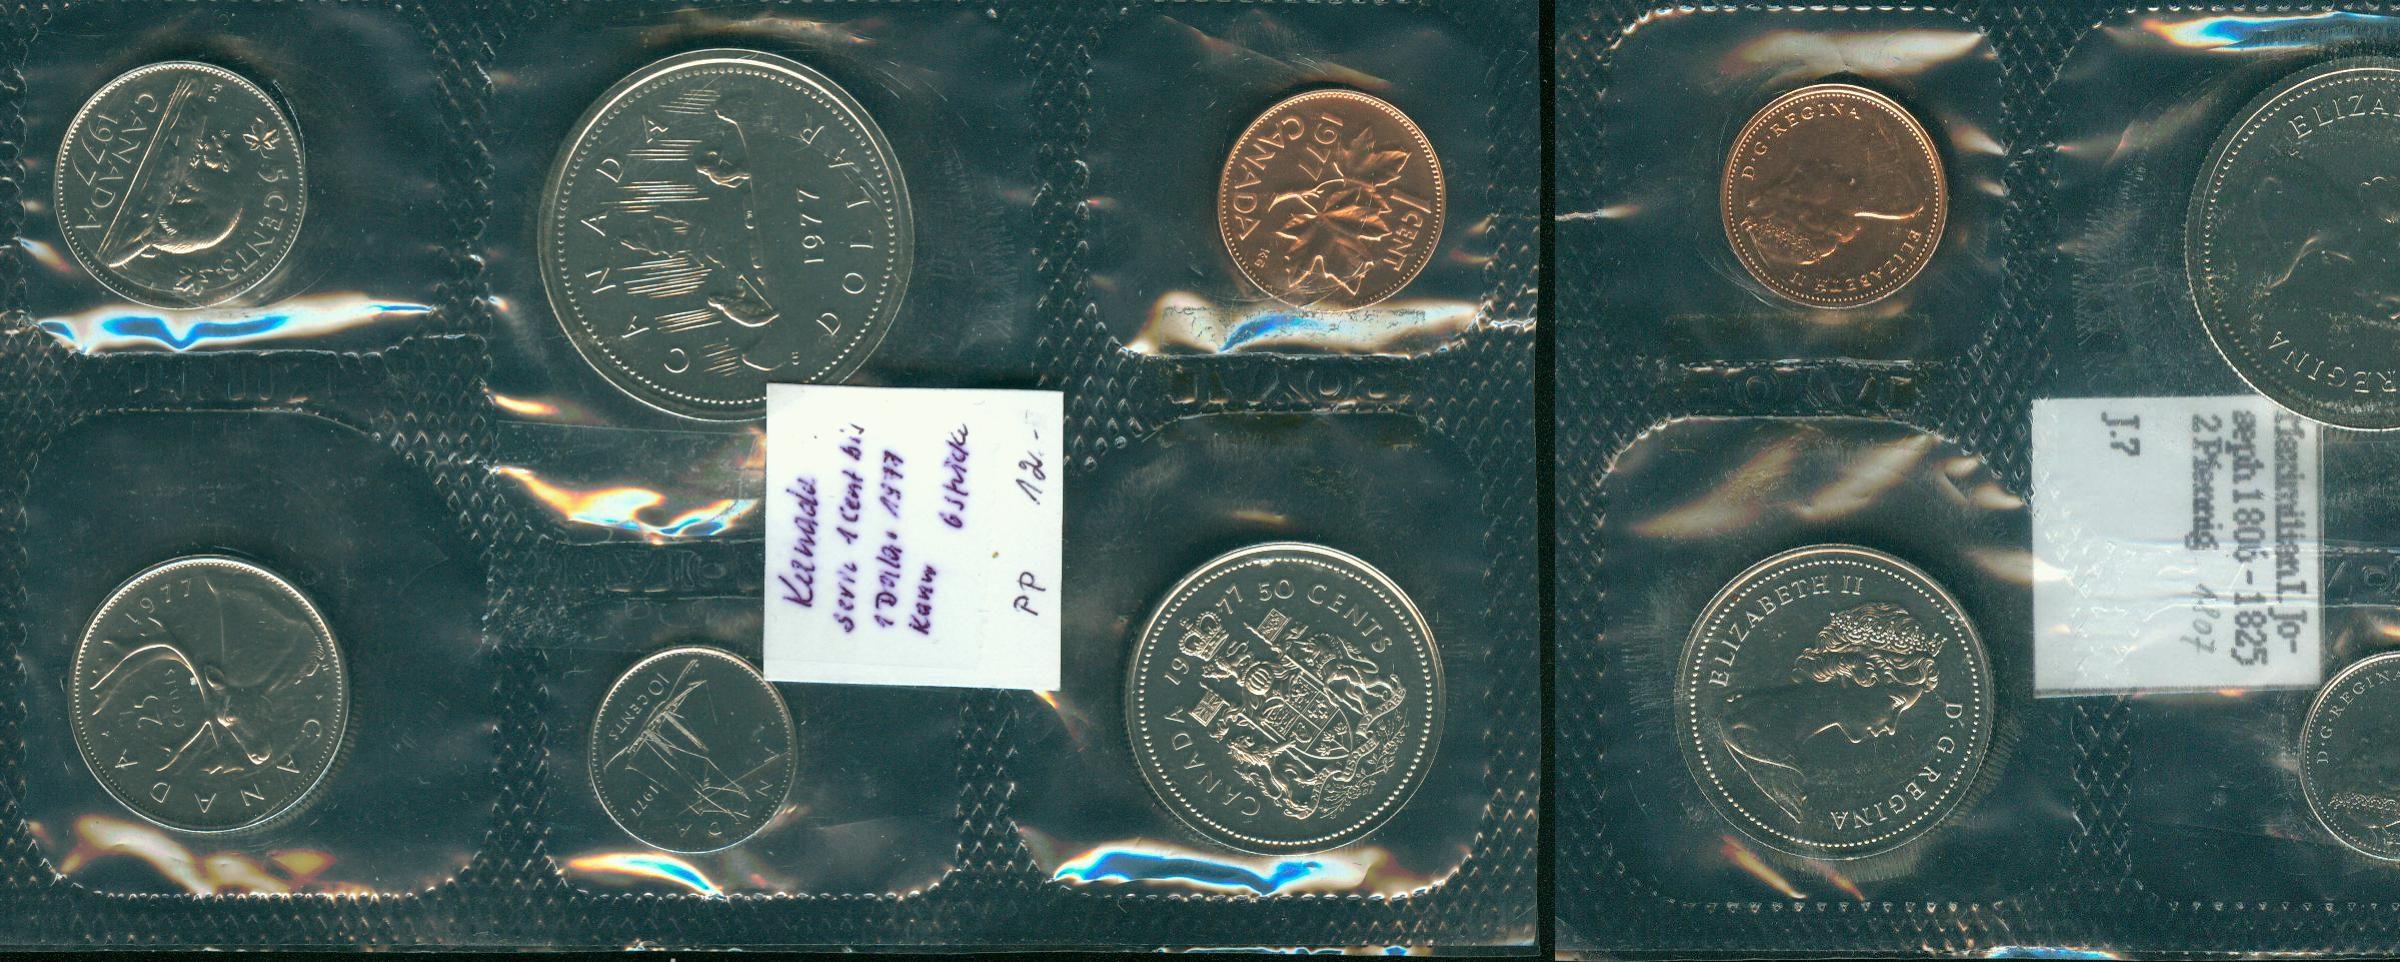 Foto Kanada Serie 1 Cent bis 1 Dollar (6 Stück) 1977 foto 268613